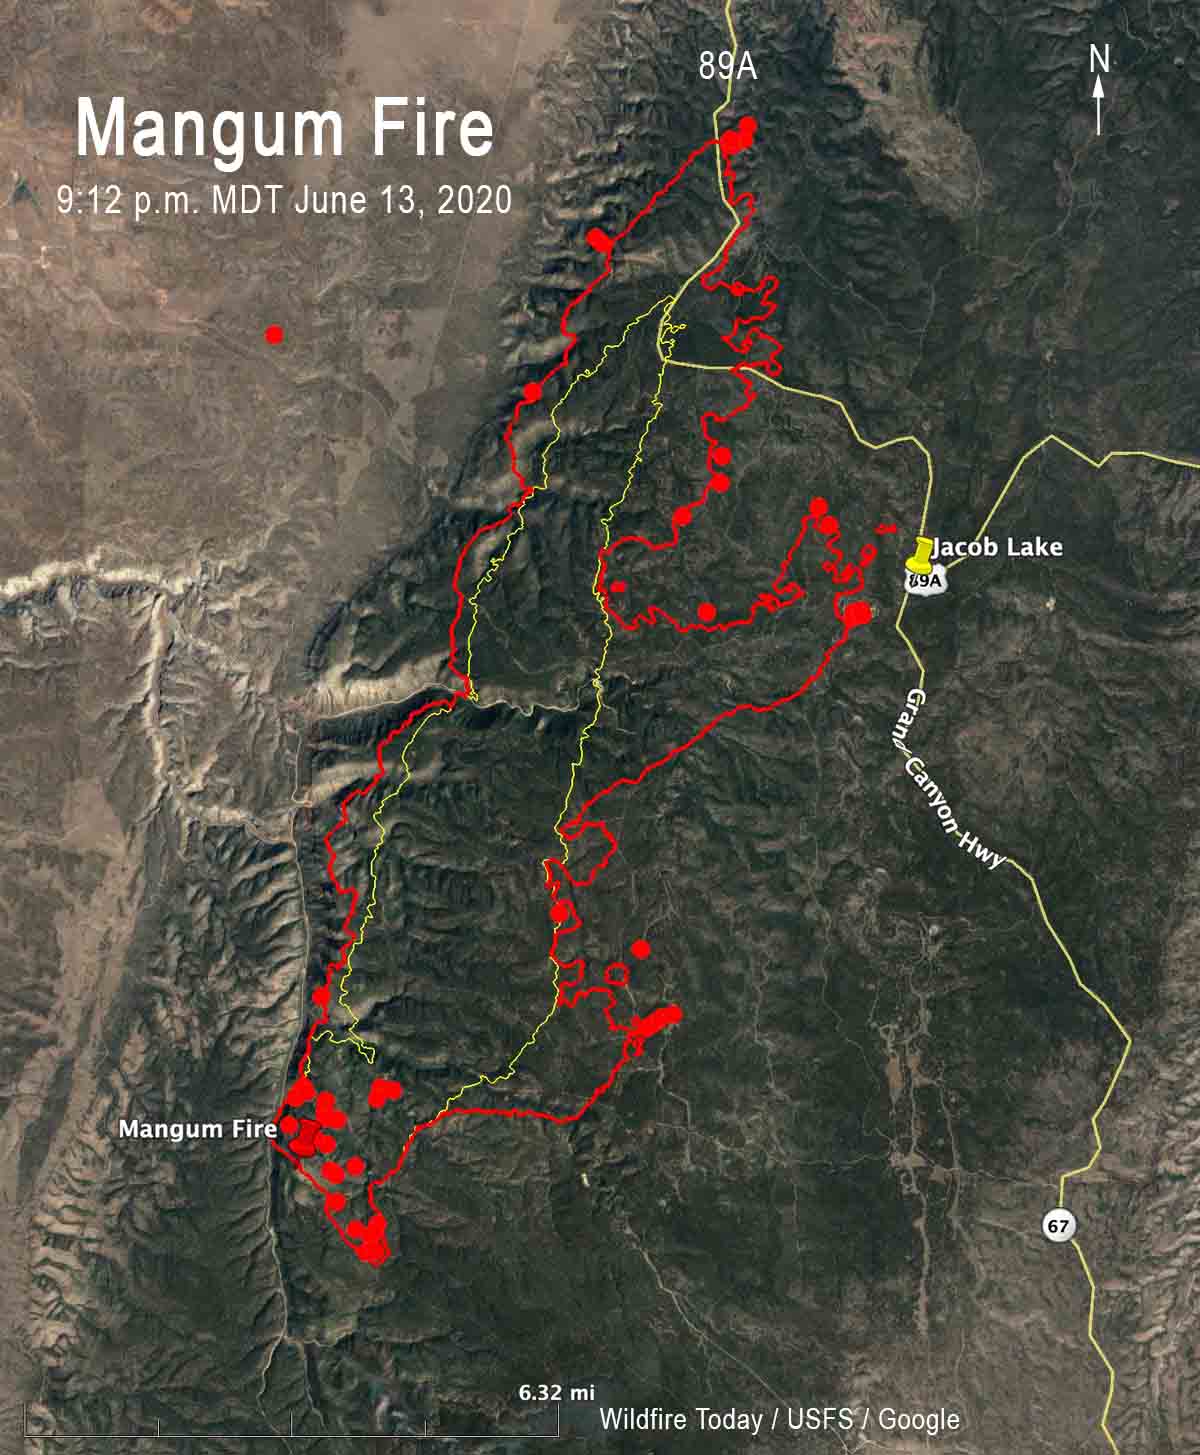 Mangum Fire Threatens Jacob Lake Arizona Wildfire Today